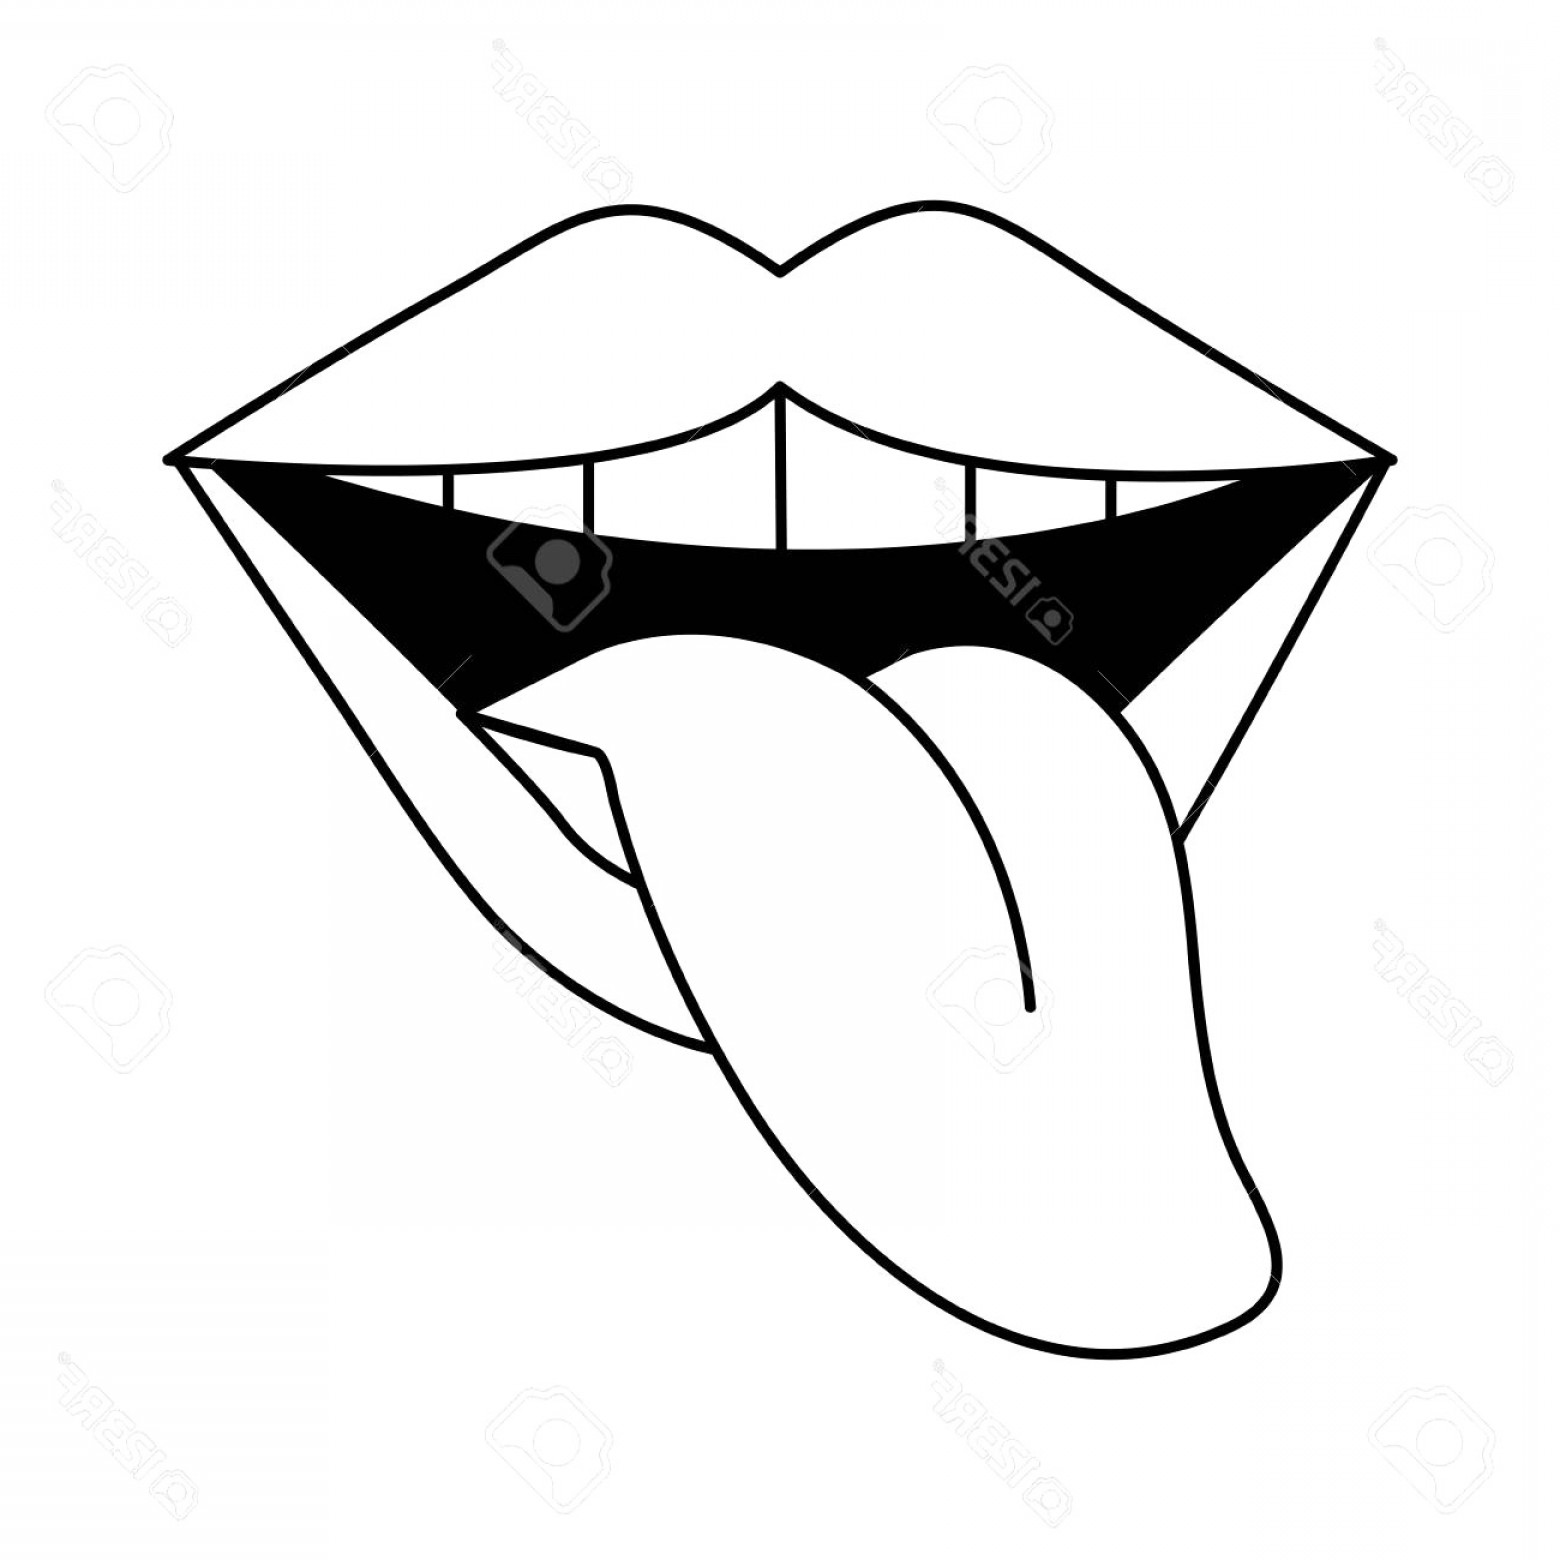 Drawn tongue clip.